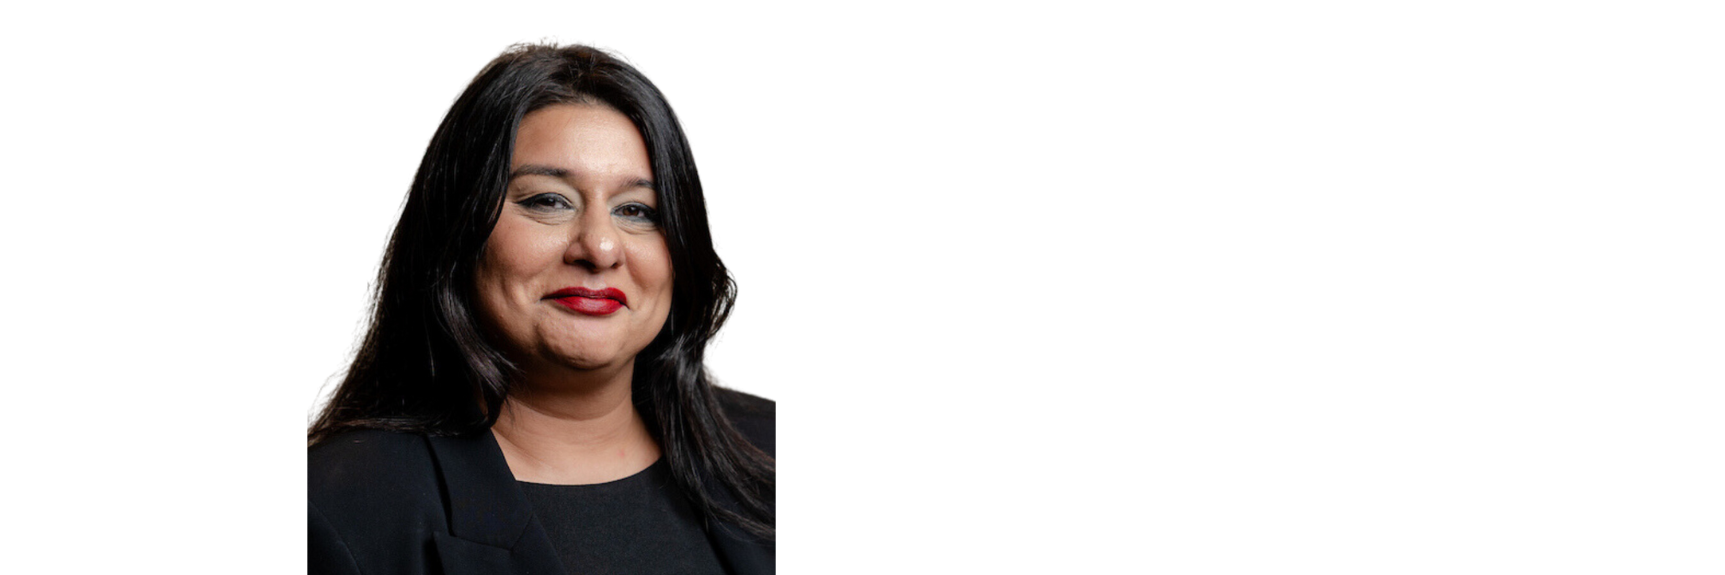 Sam Sawar - Partnerships Director